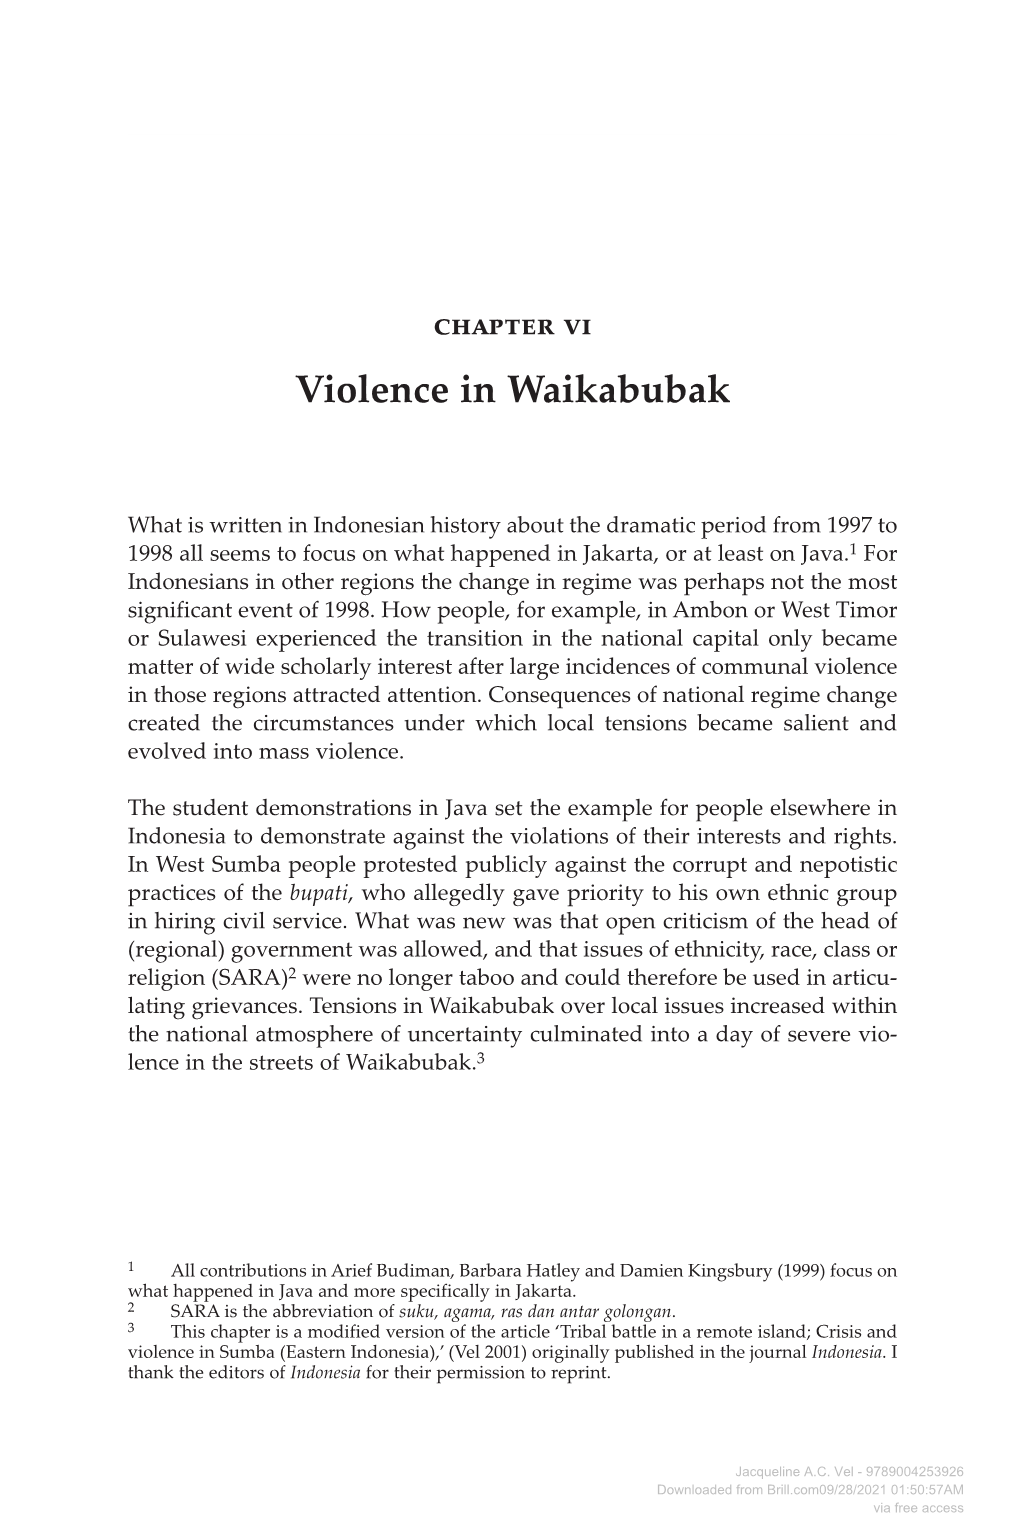 Violence in Waikabubak